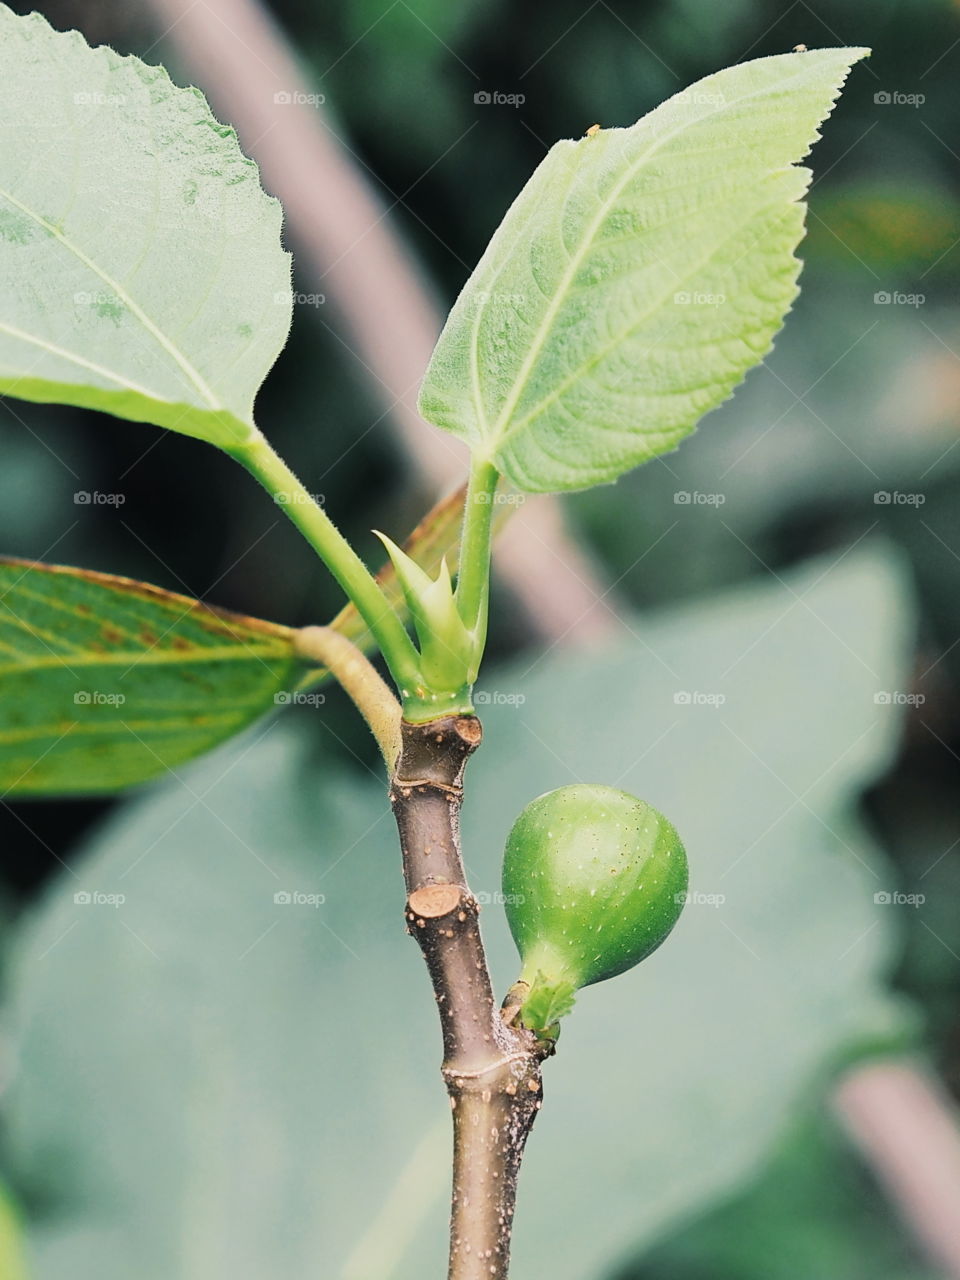 my figs